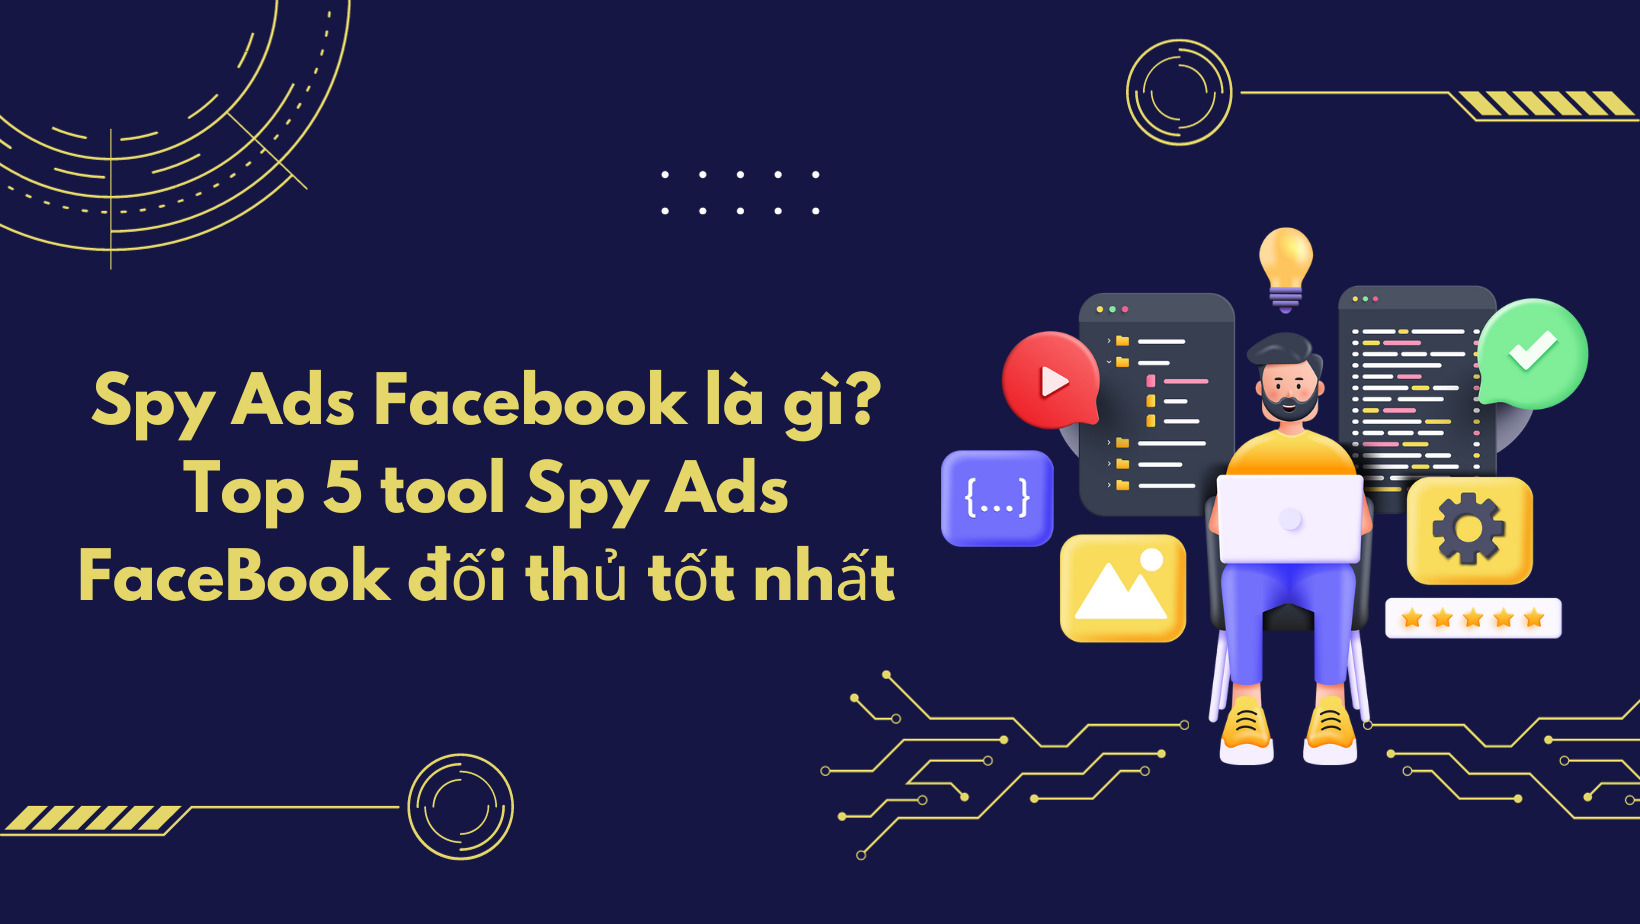 Spy Ads Facebook là gì? Top 5 tool Spy Ads FaceBook đối thủ tốt nhất